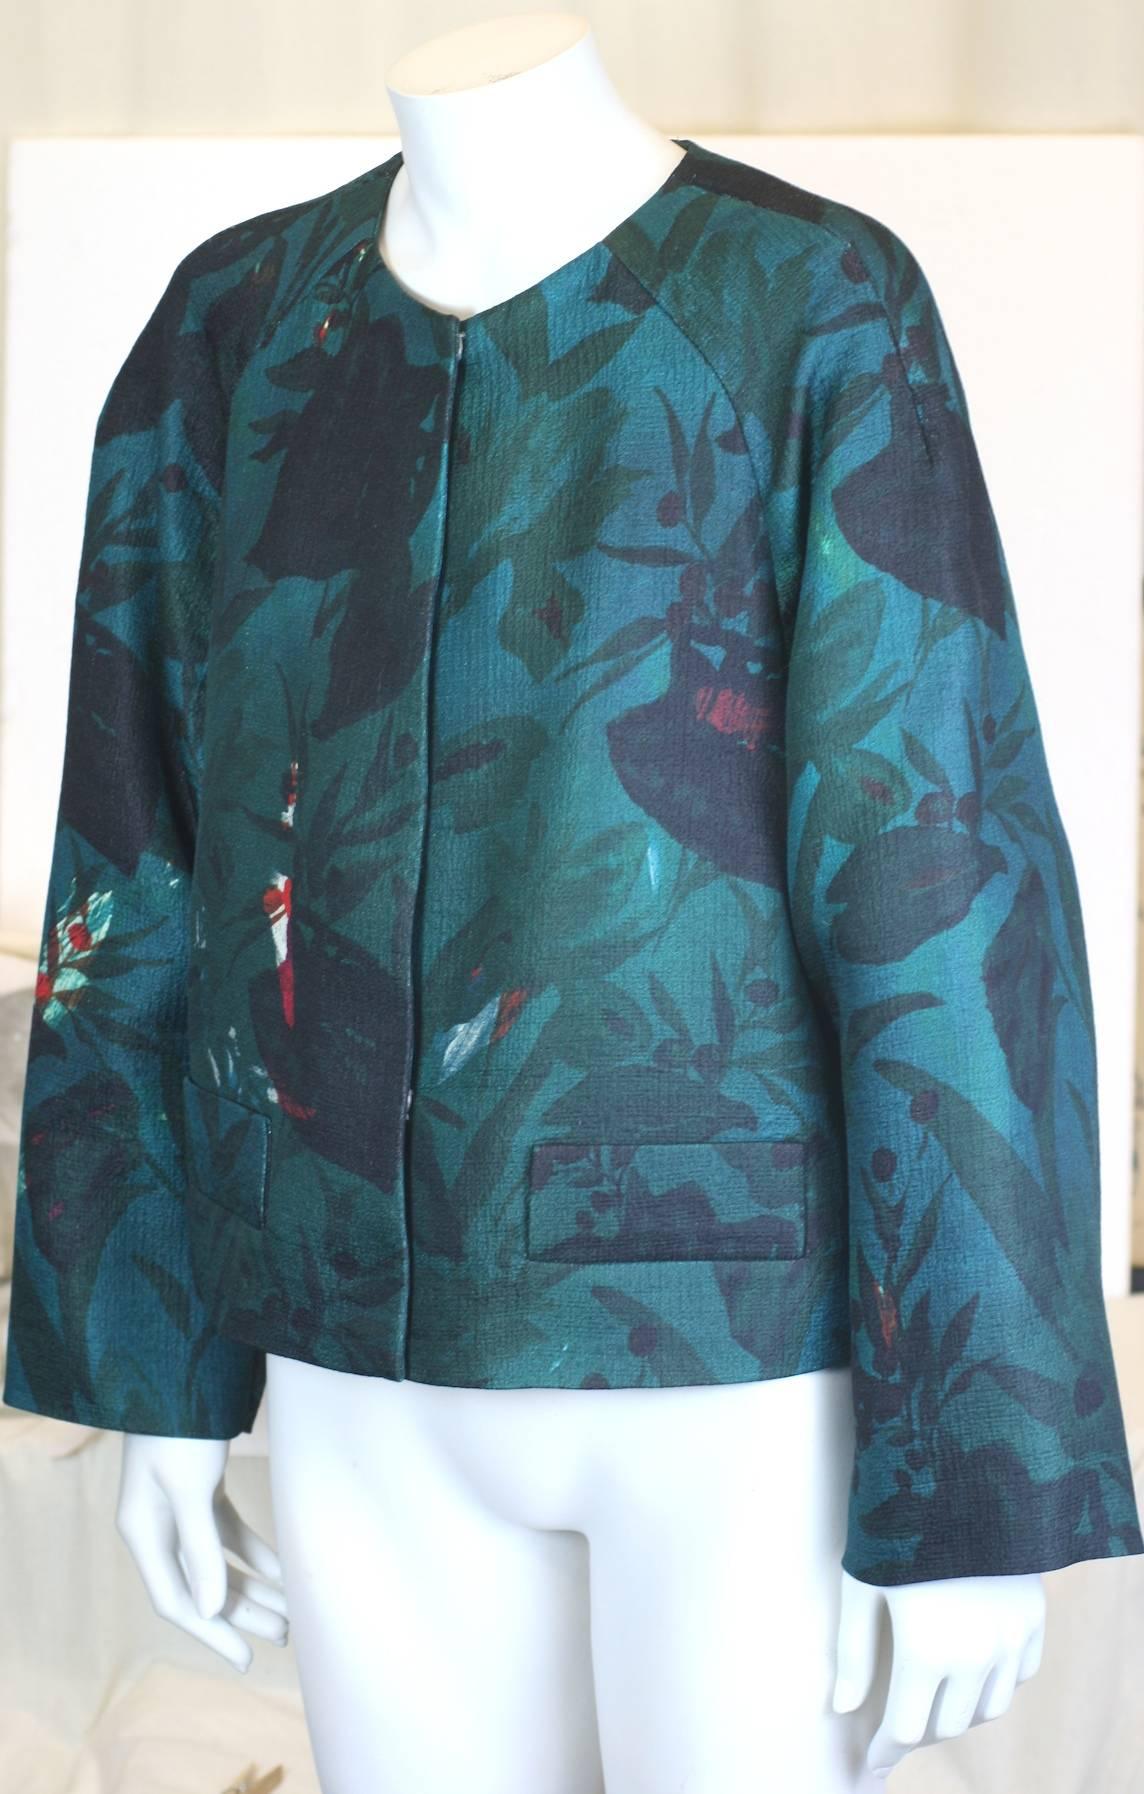 dries van noten floral jacket